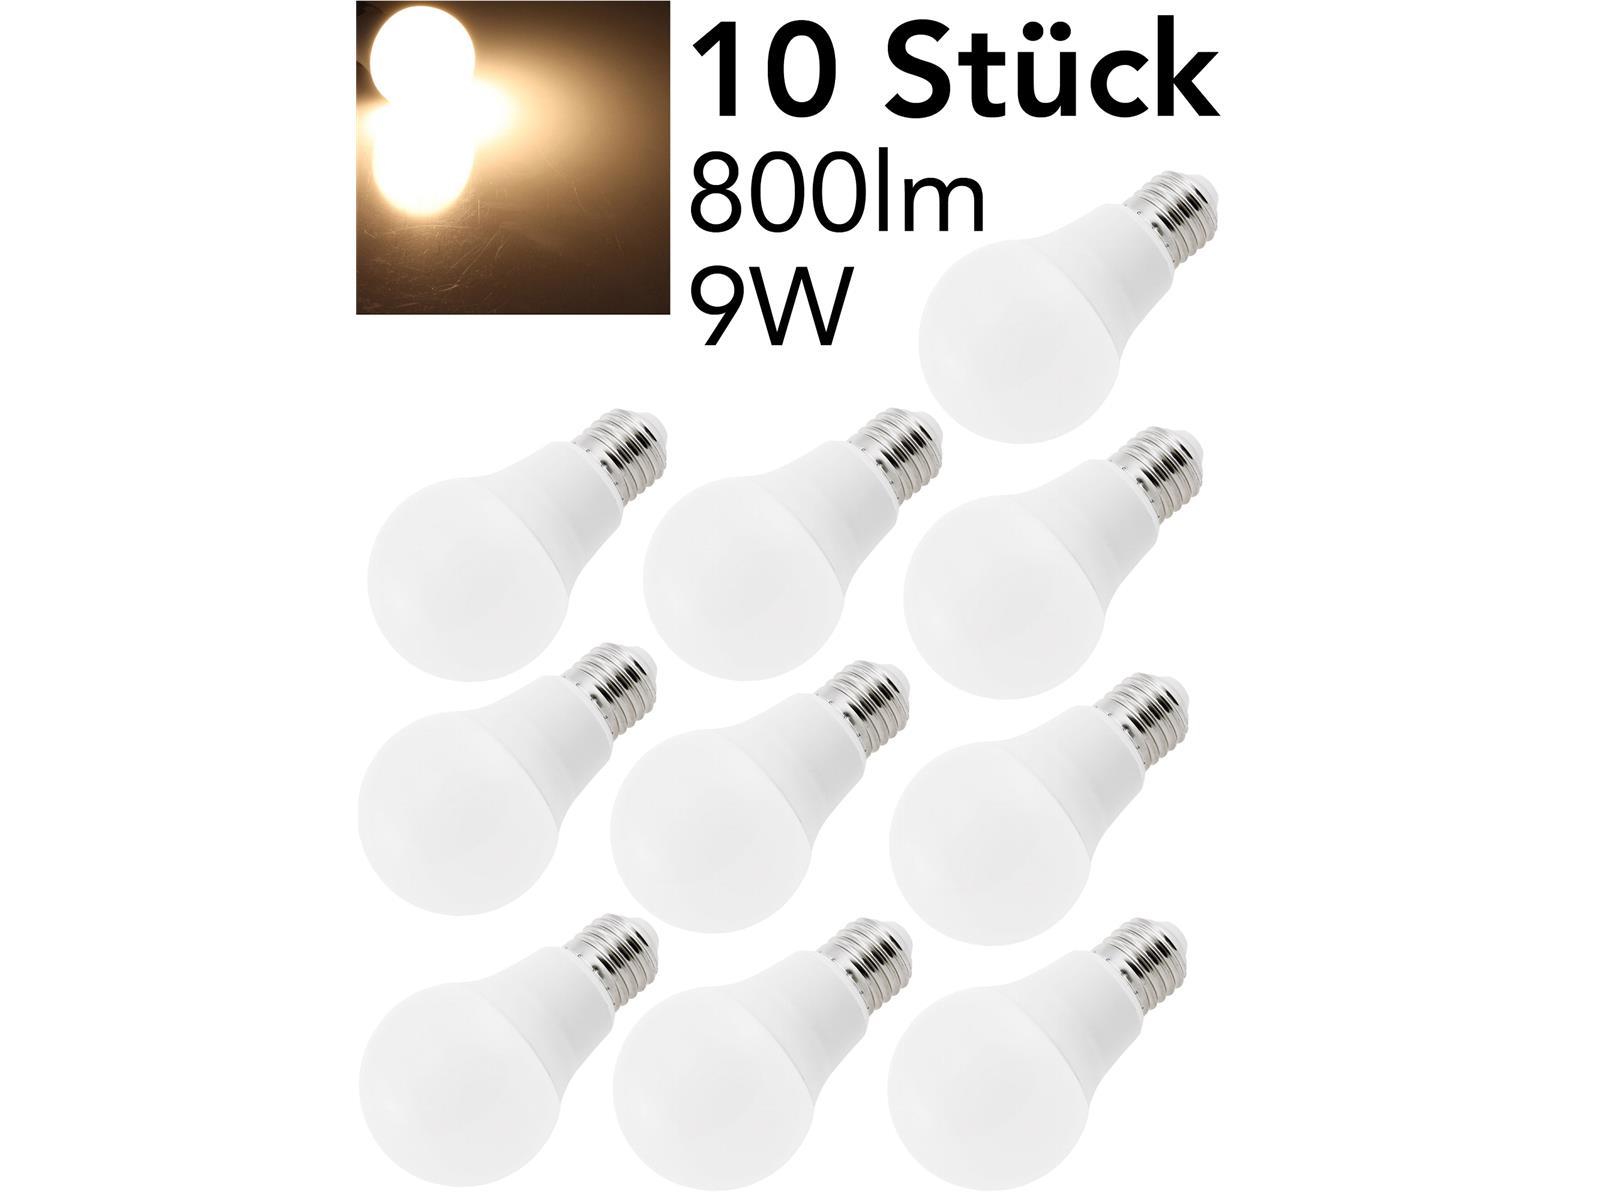 LED Glühlampe E27 "G80 Promo" 10er-Pack2800k, 800lm, 230V/9W, 160°, warmweiß